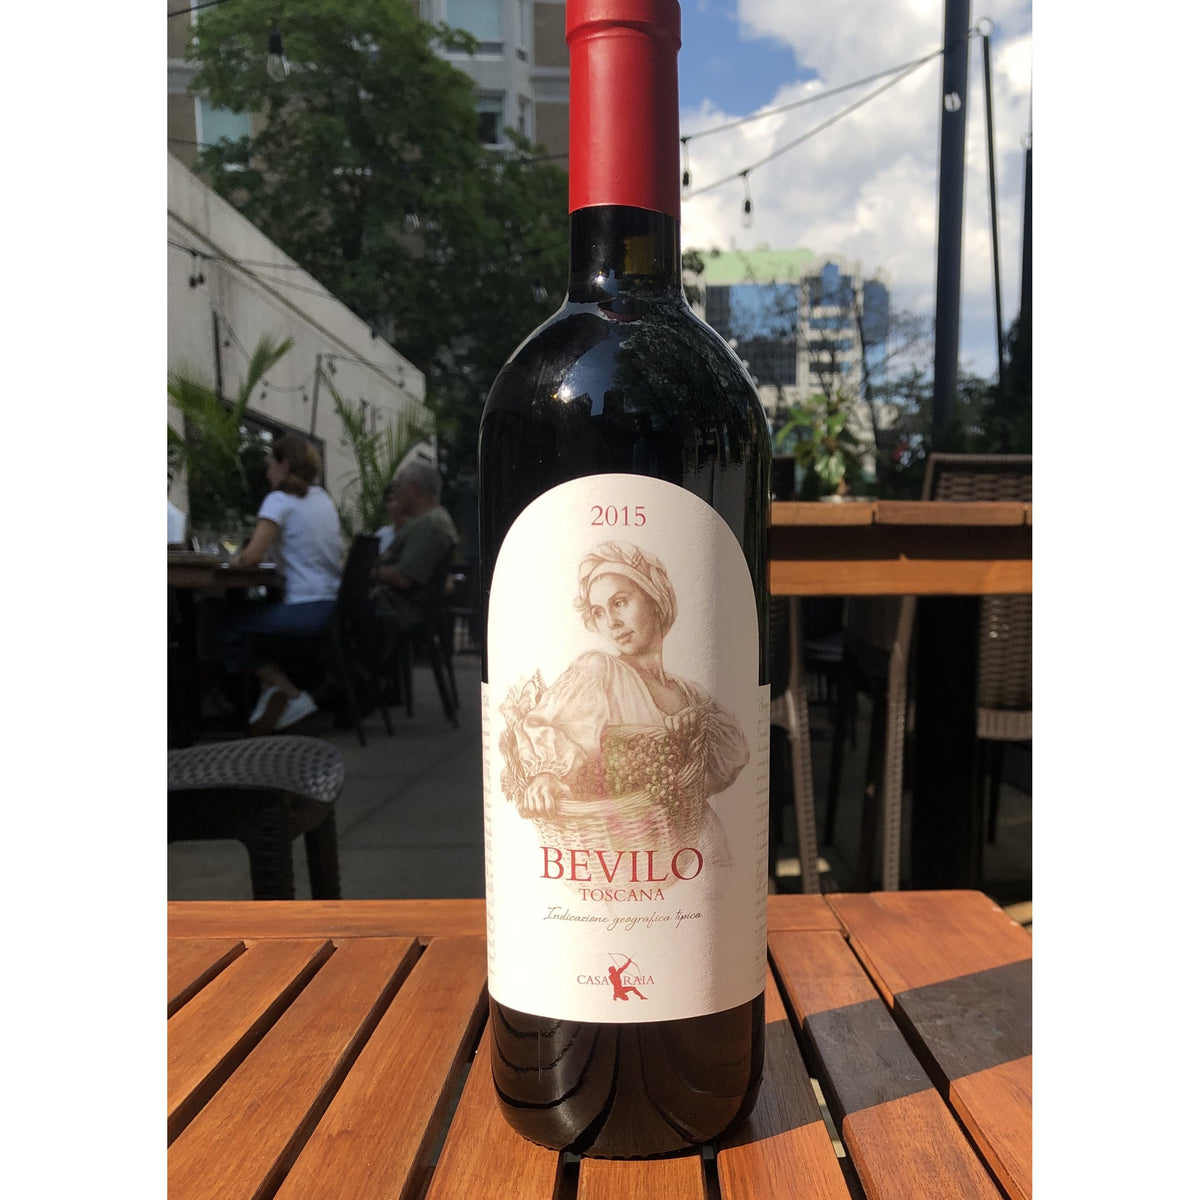 Bevilo rosso - Rouge - Casa Raia - Le vin dans les voiles